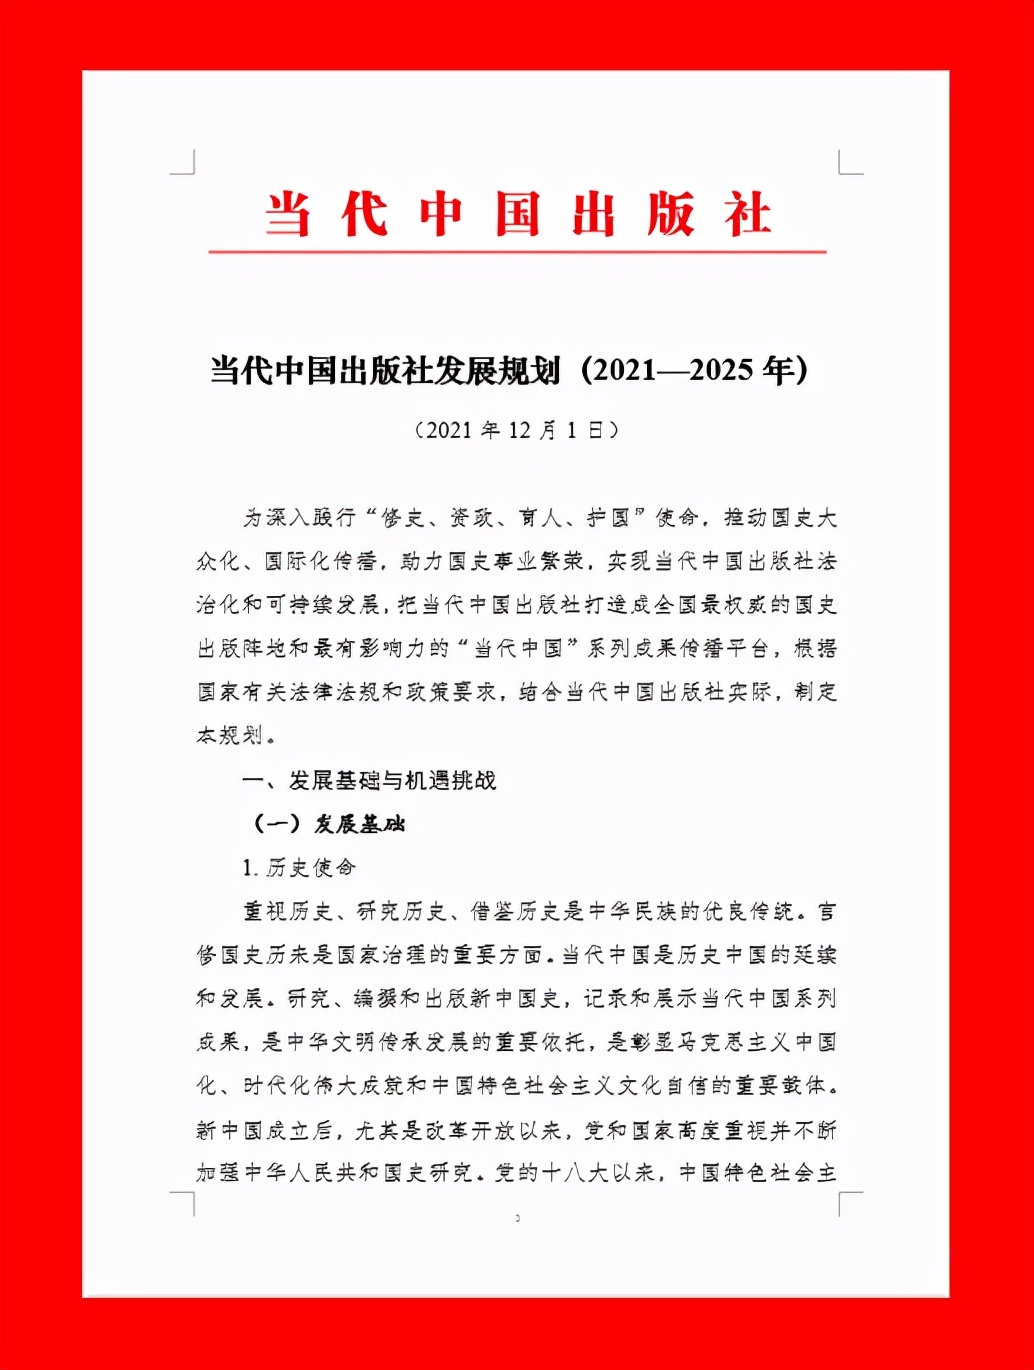 《当代中国出版社发展规划（2021—2025年）》颁布实施